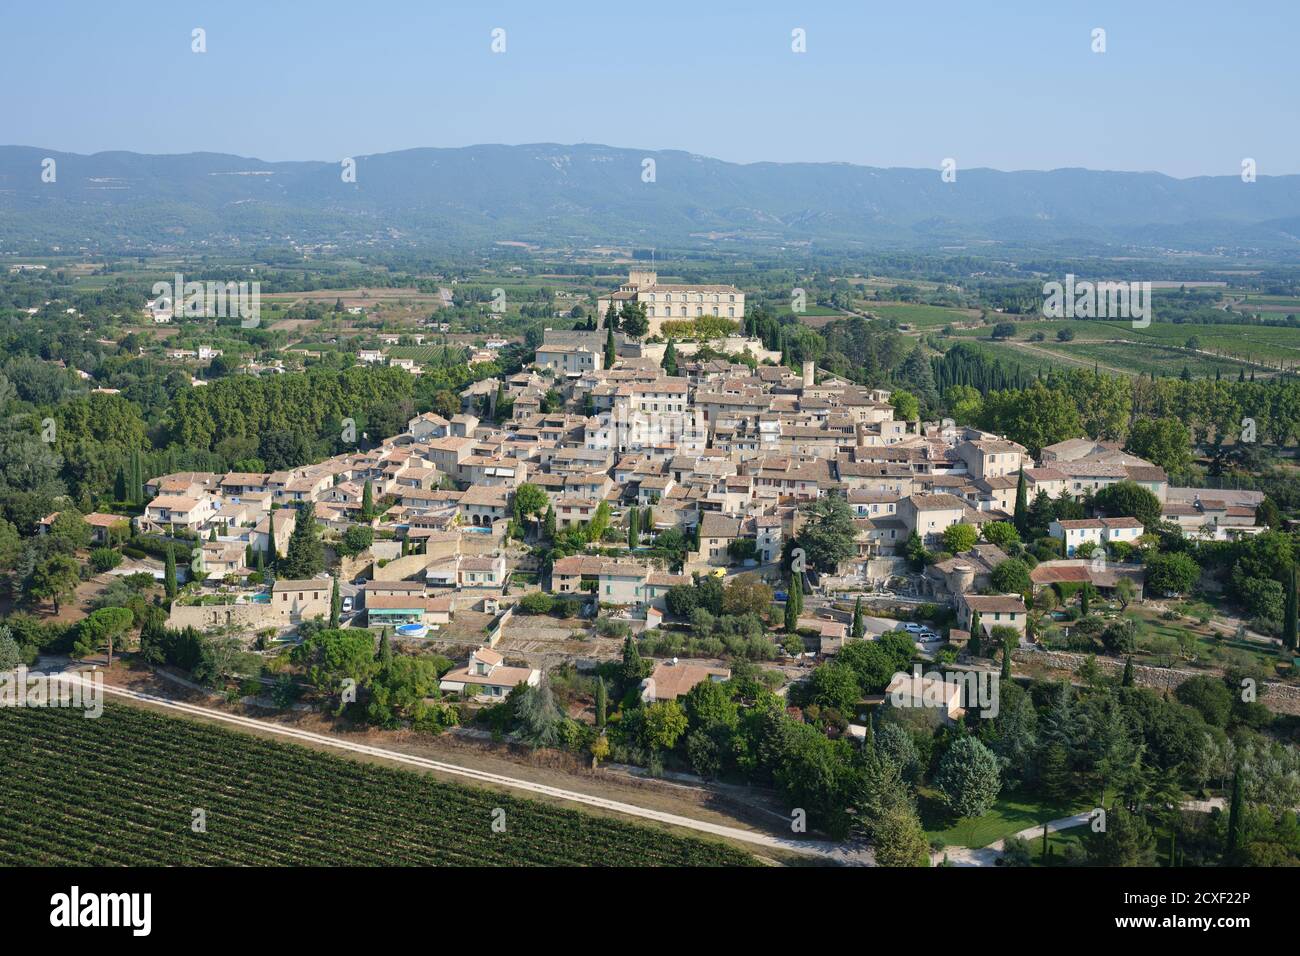 VISTA AEREA. Borgo medievale con il suo castello in cima, che domina i campi agricoli della Valle della Durance. Ansouis, Vaucluse, Francia. Foto Stock